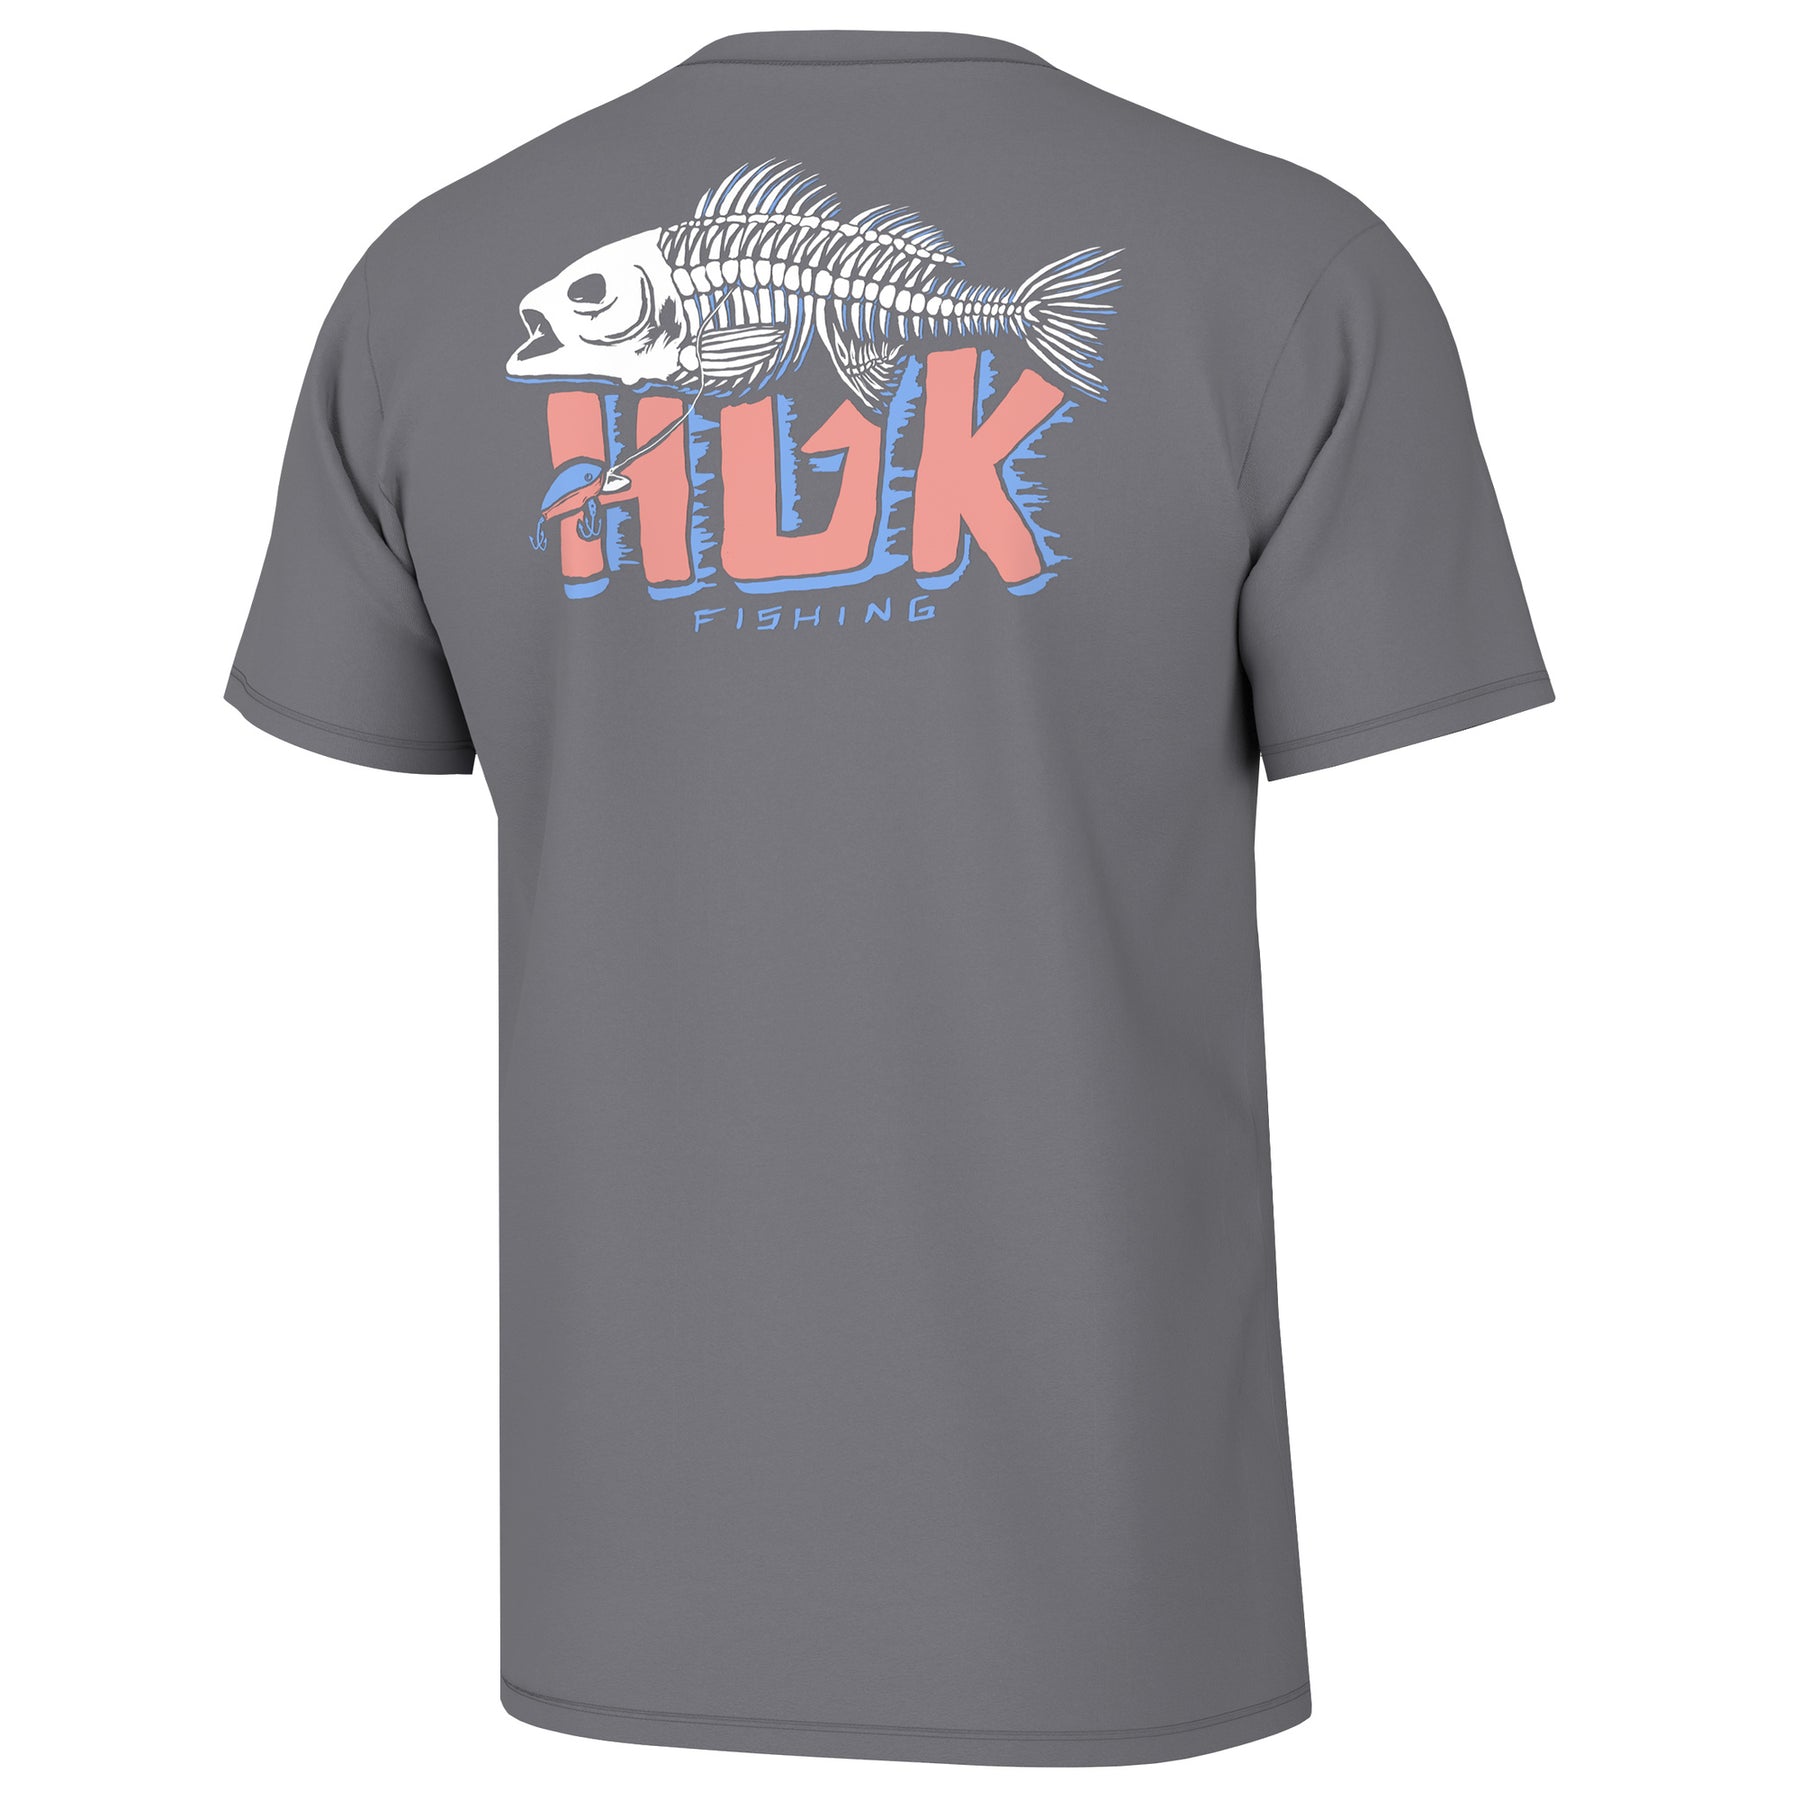 Huk Fishing T-shirt — Big Boss Fishing